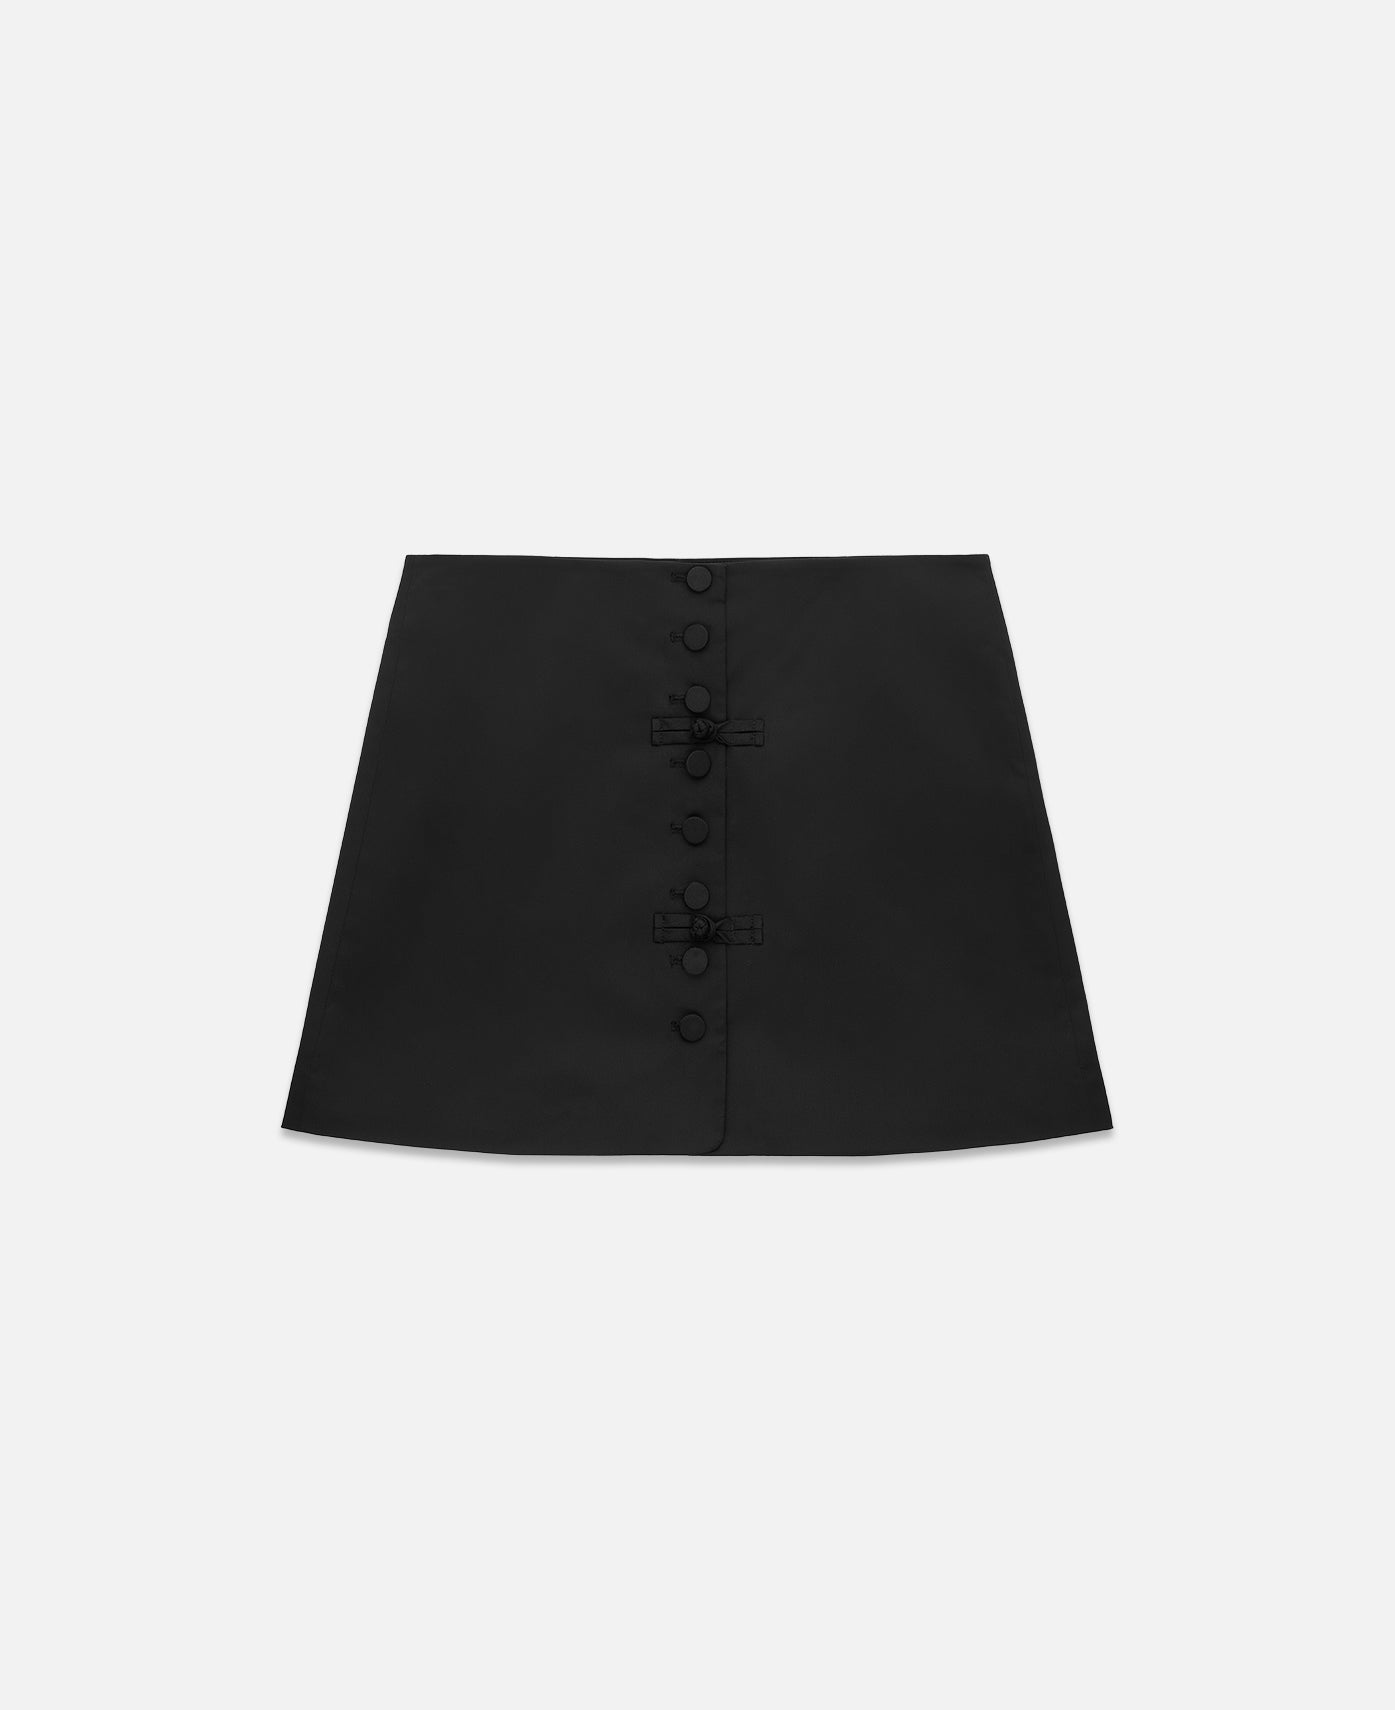 Women's Up Skirt (Black)